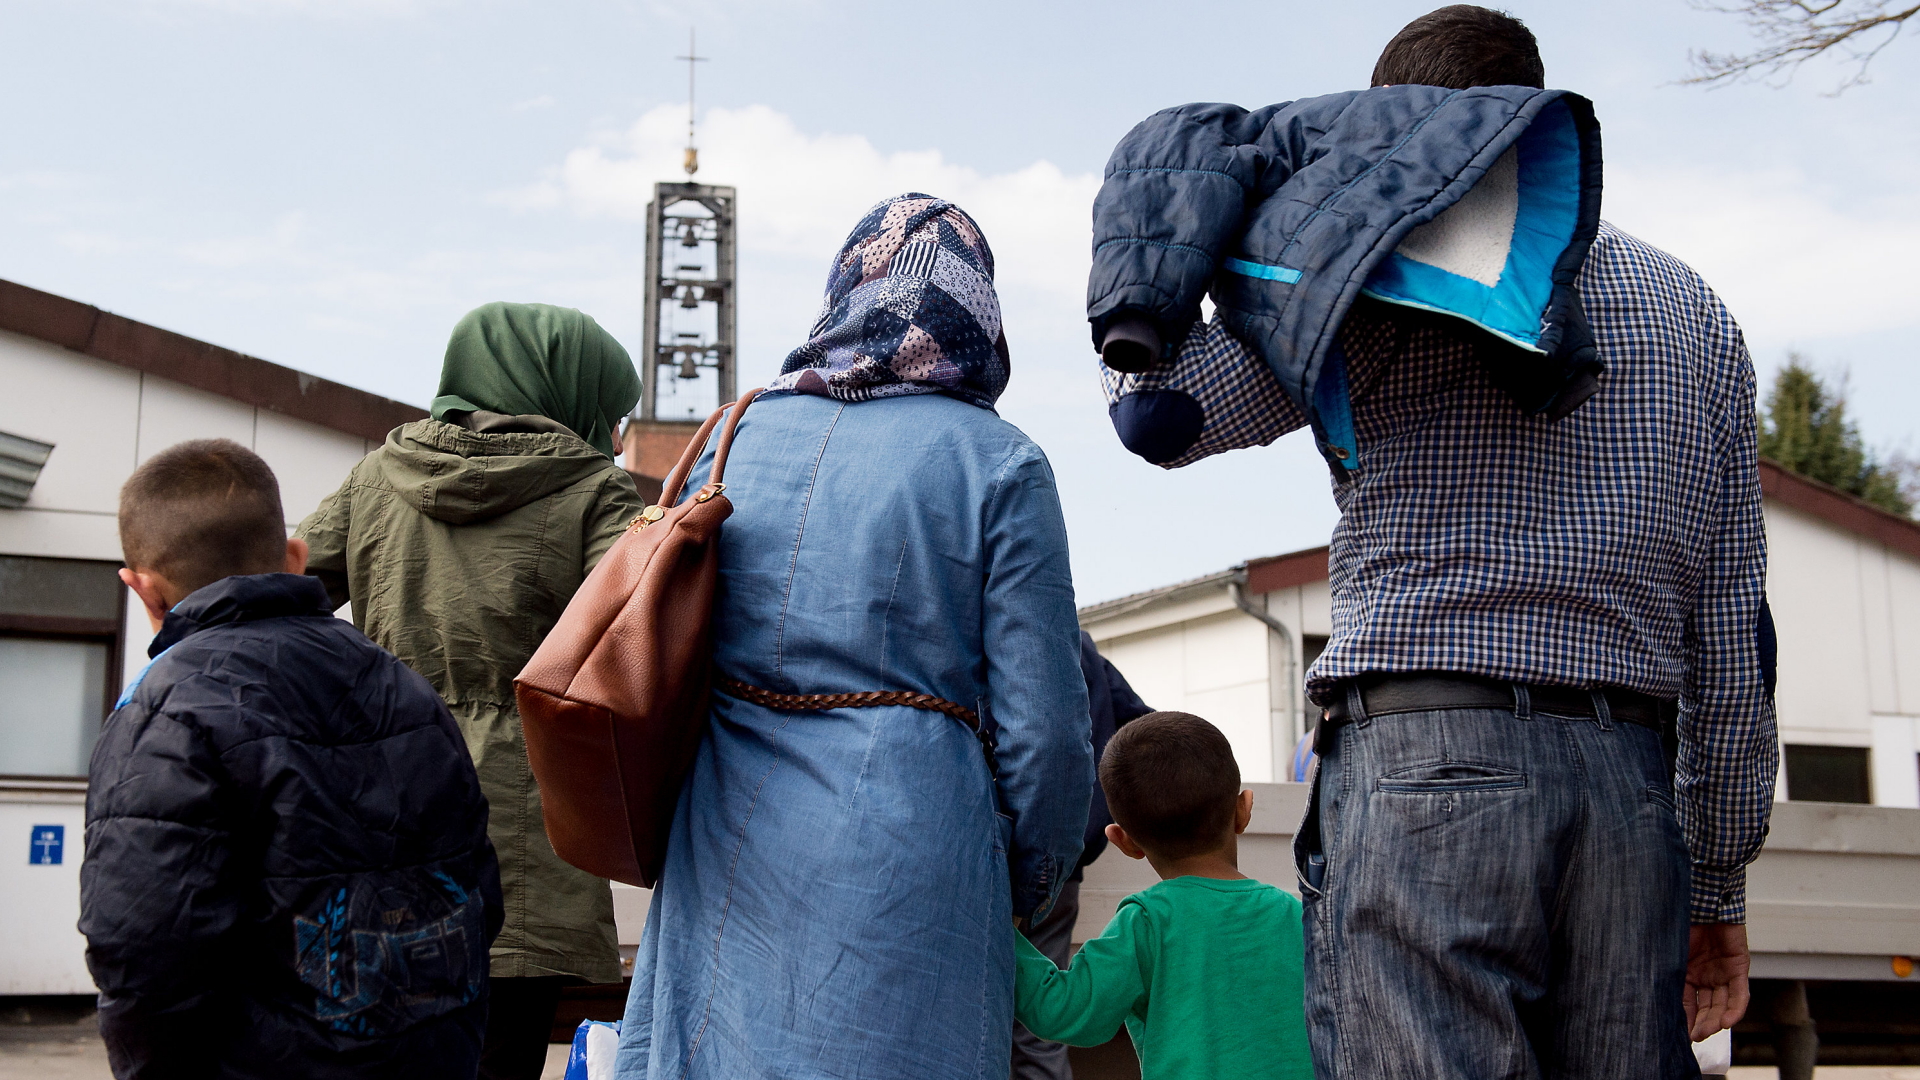 Syrische Familie vor dem Grenzdurchgangslager Friedland | dpa